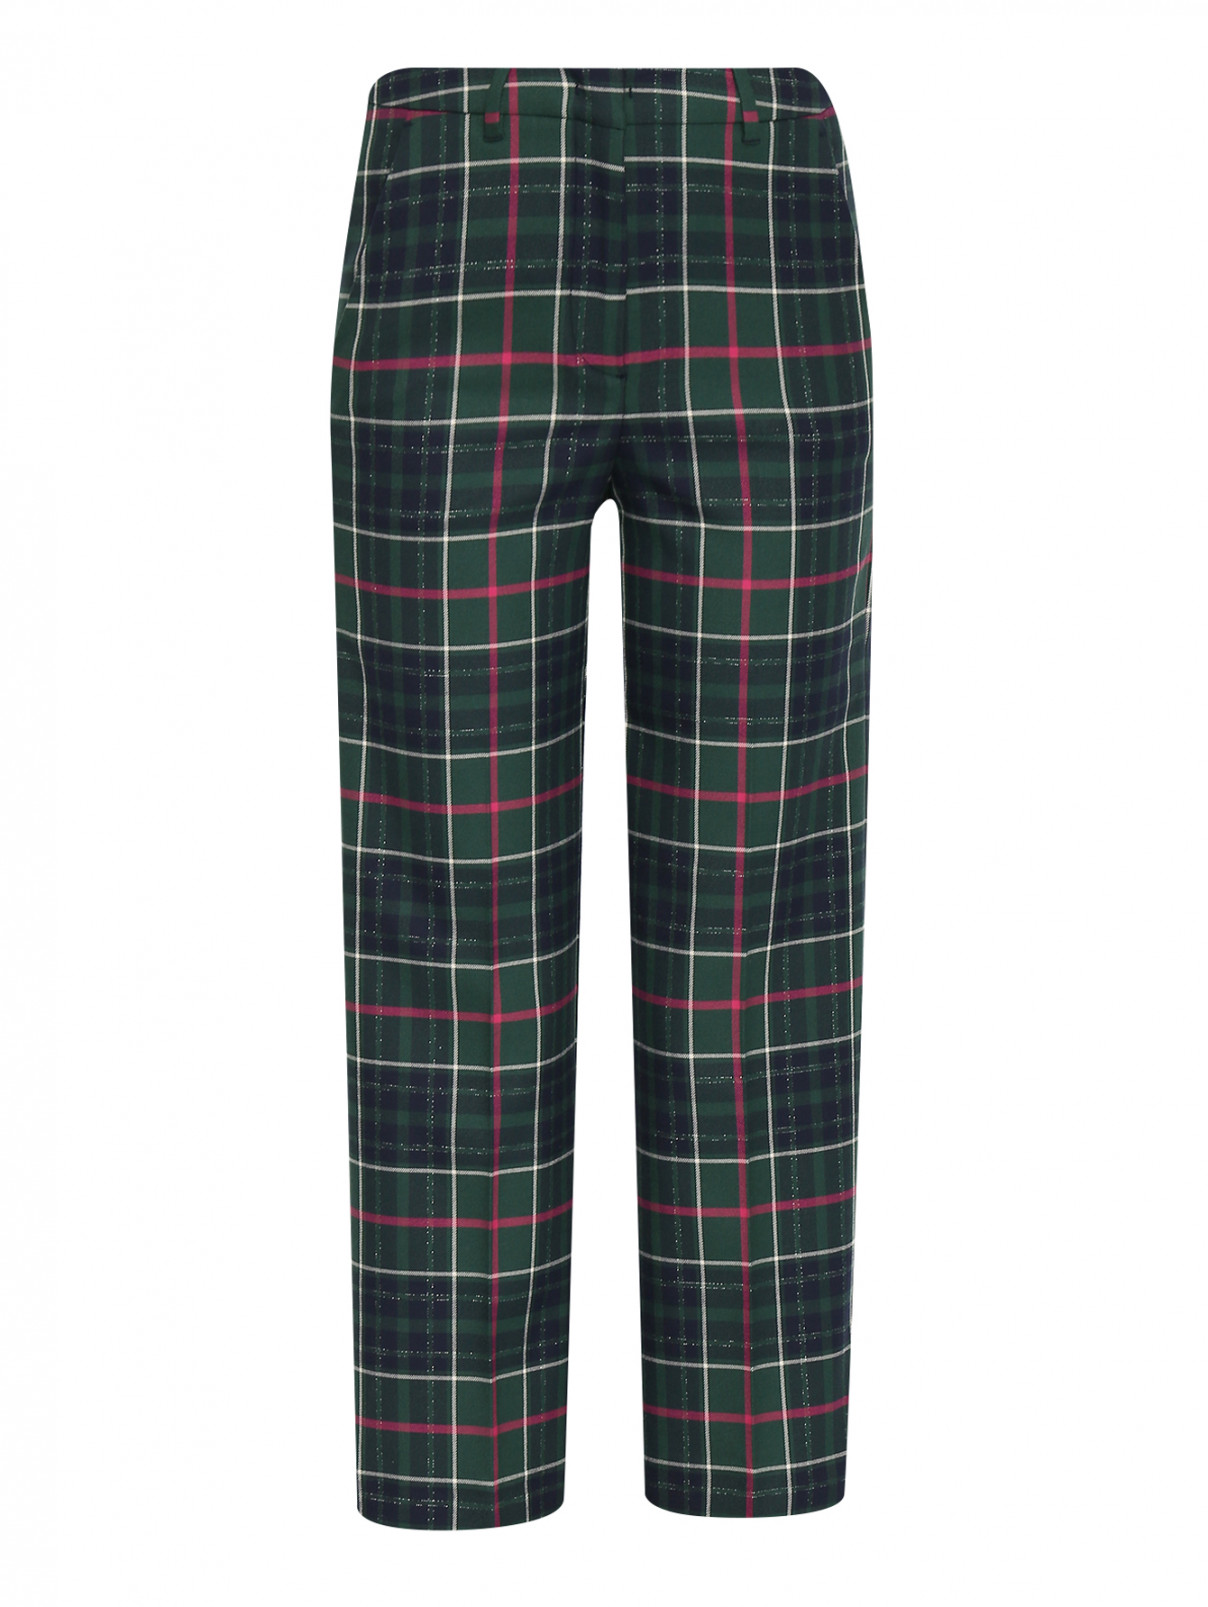 Укороченные брюки с узором клетка Max&Co  –  Общий вид  – Цвет:  Зеленый